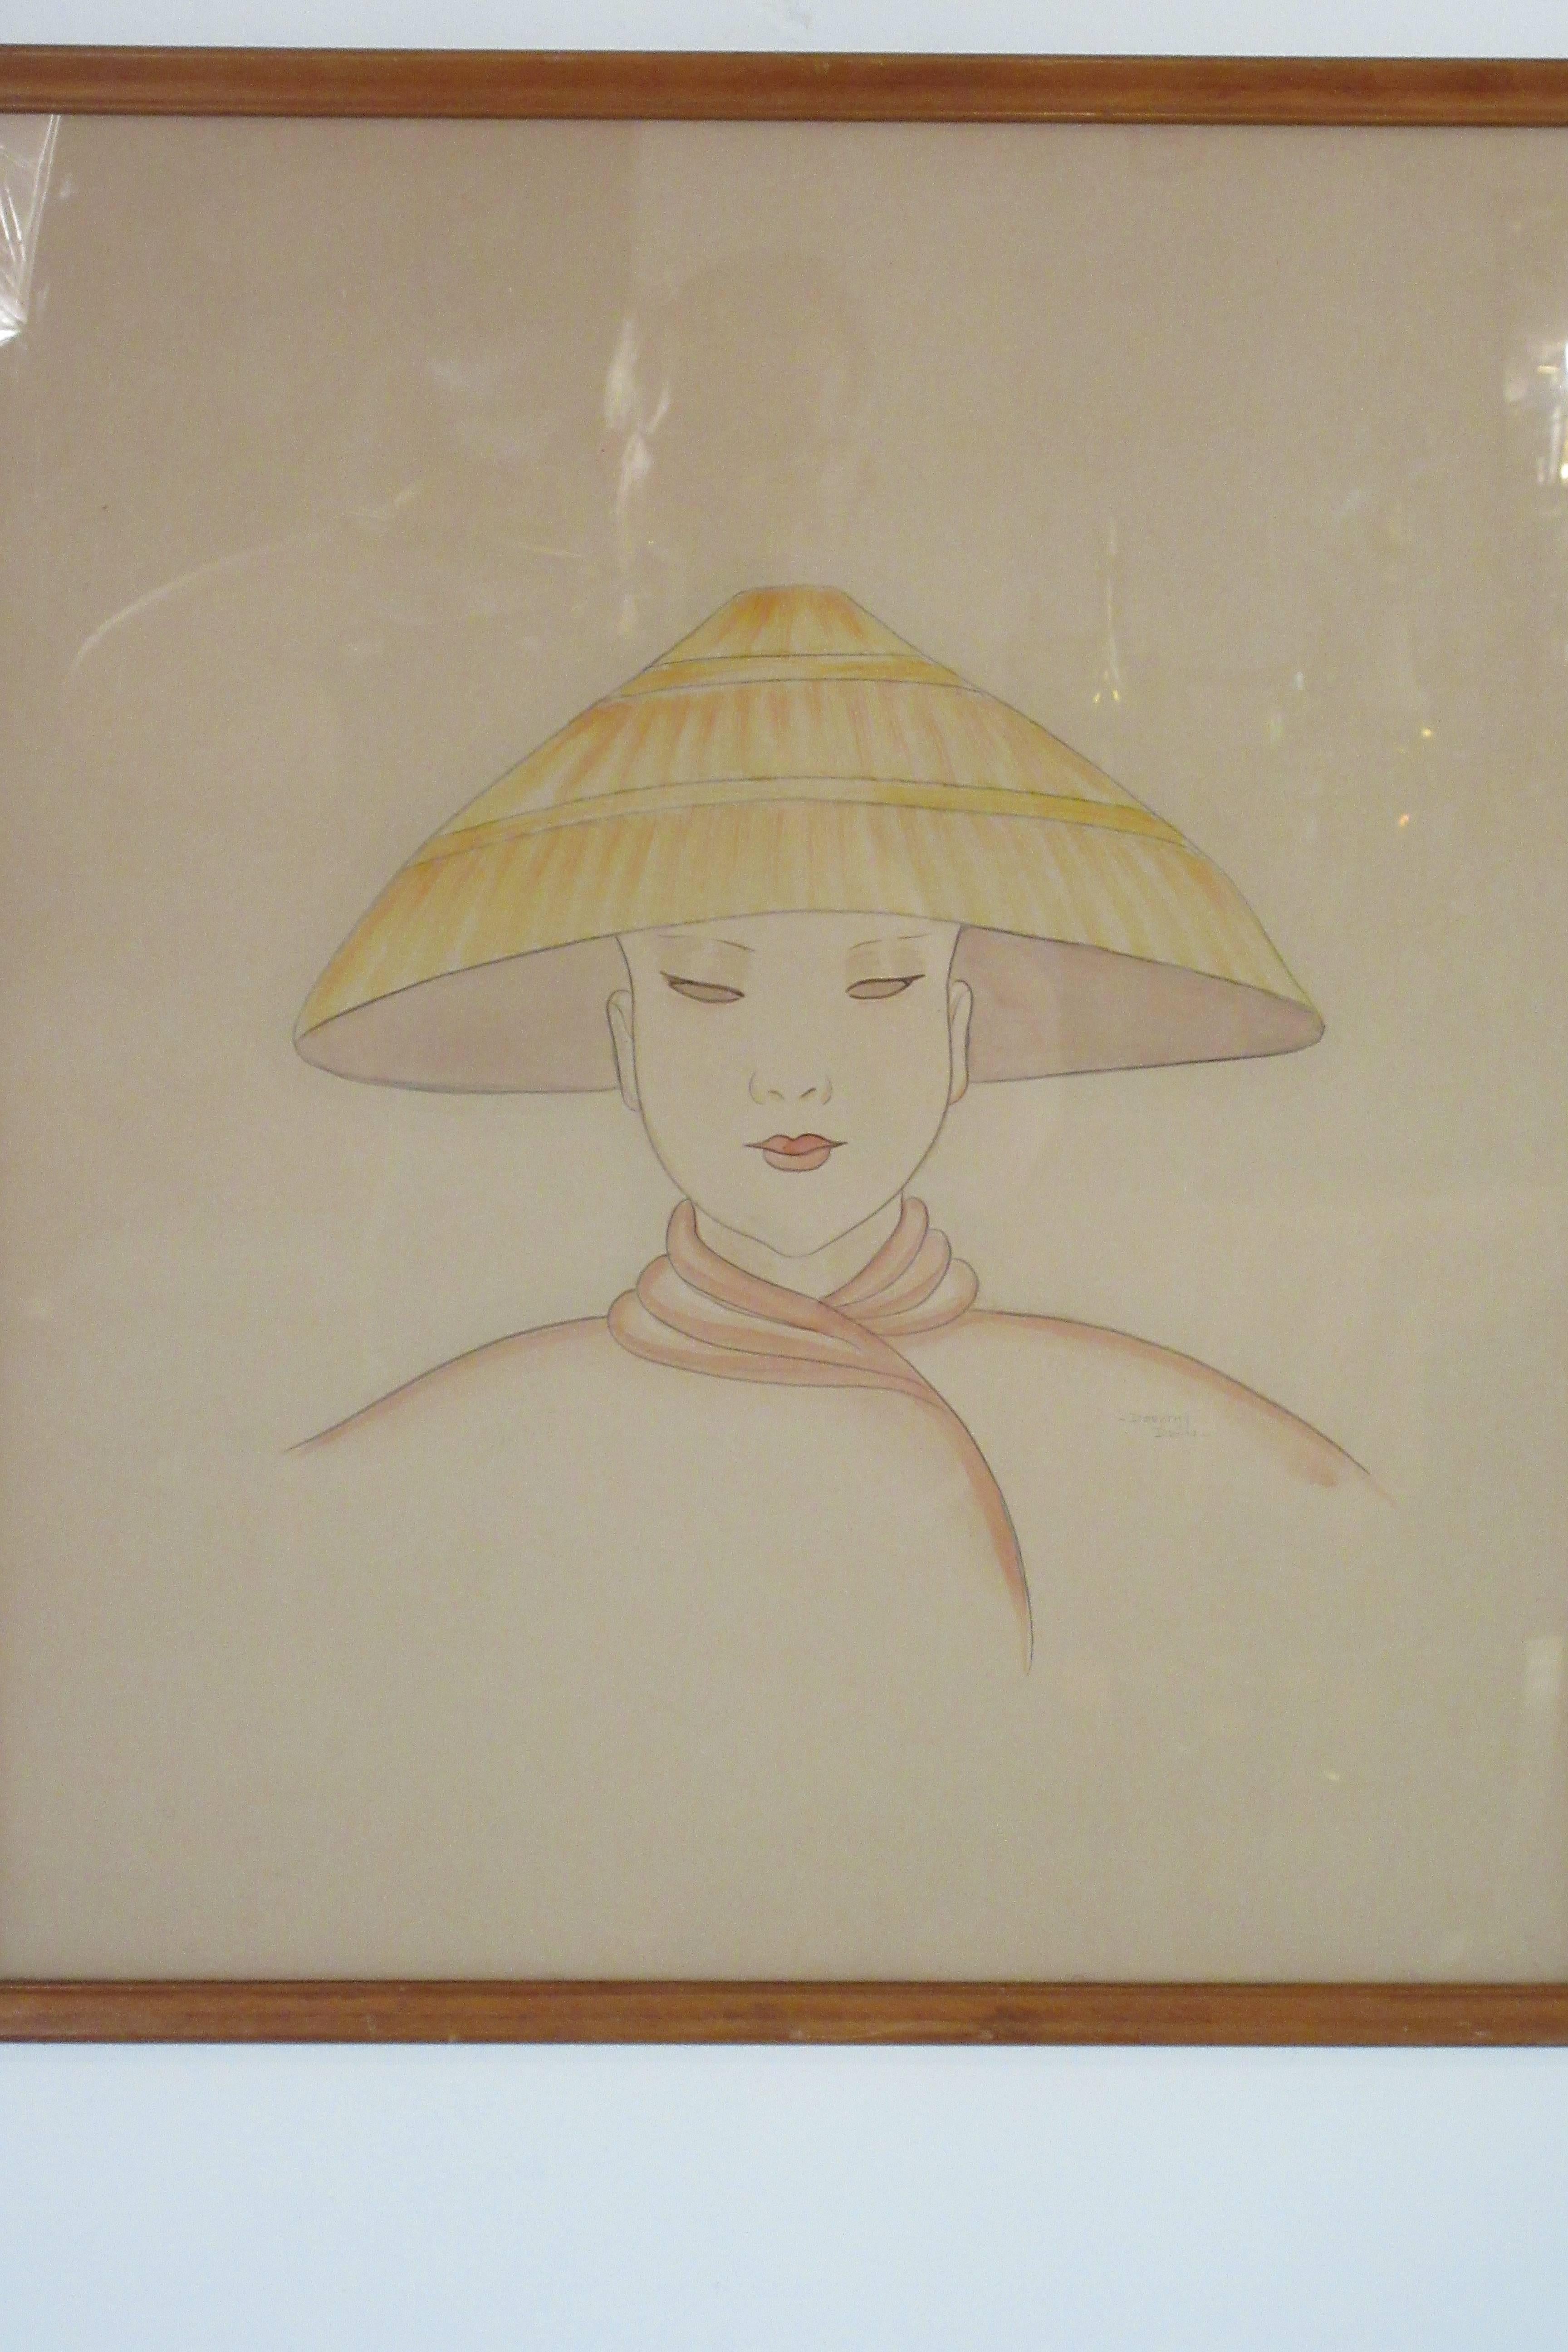 Peinture à l'eau sur papier des années 1940 d'une femme asiatique portant un chapeau 
Port du Nón Lá (chapeau traditionnel vietnamien)
Signé Dorothy Dwin
Illustration